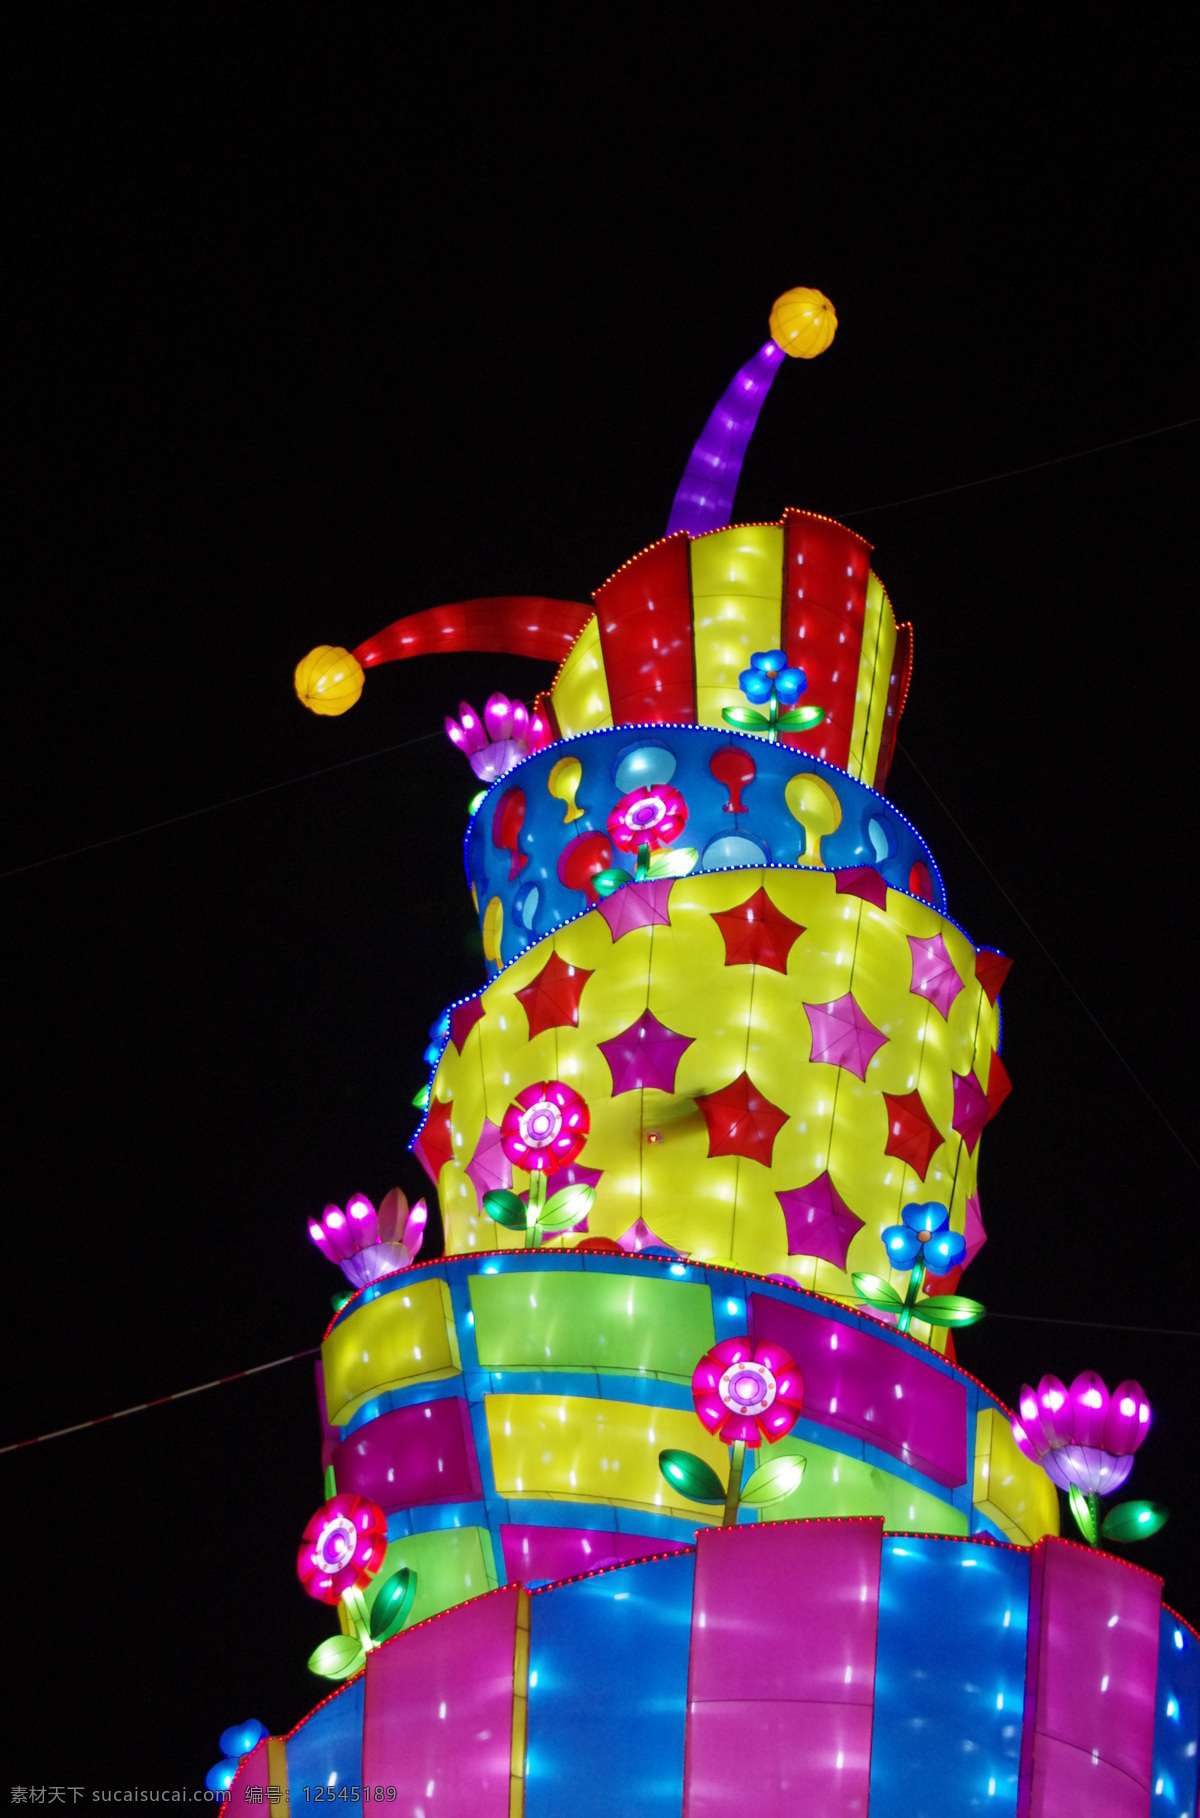 成都 国色天香 平安夜 之行 灯 旅游摄影 人文景观 夜晚 灯景 巨型蛋糕 家居装饰素材 灯饰素材